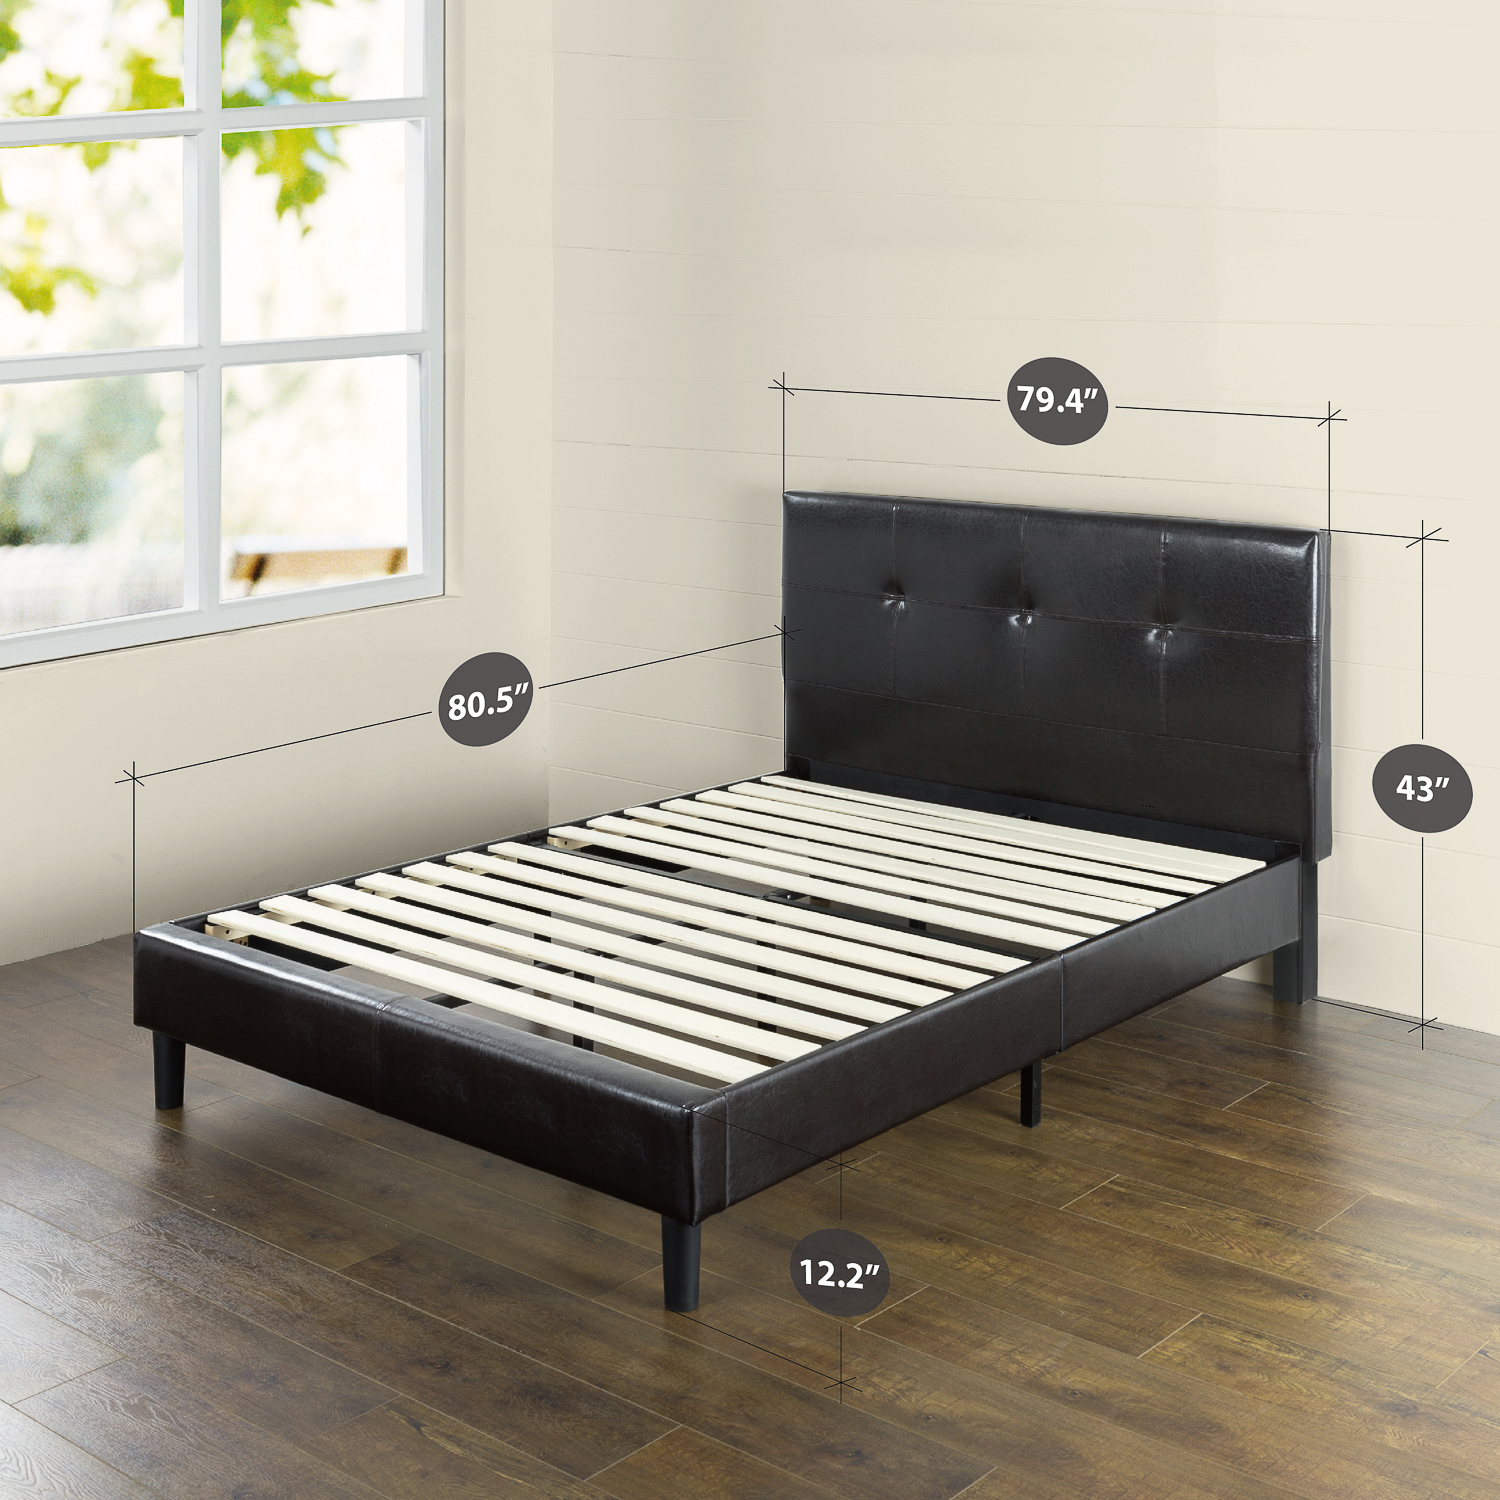 Zinus Kitch 43” Faux Leather Upholstered Platform Bed Frame, King - image 5 of 7